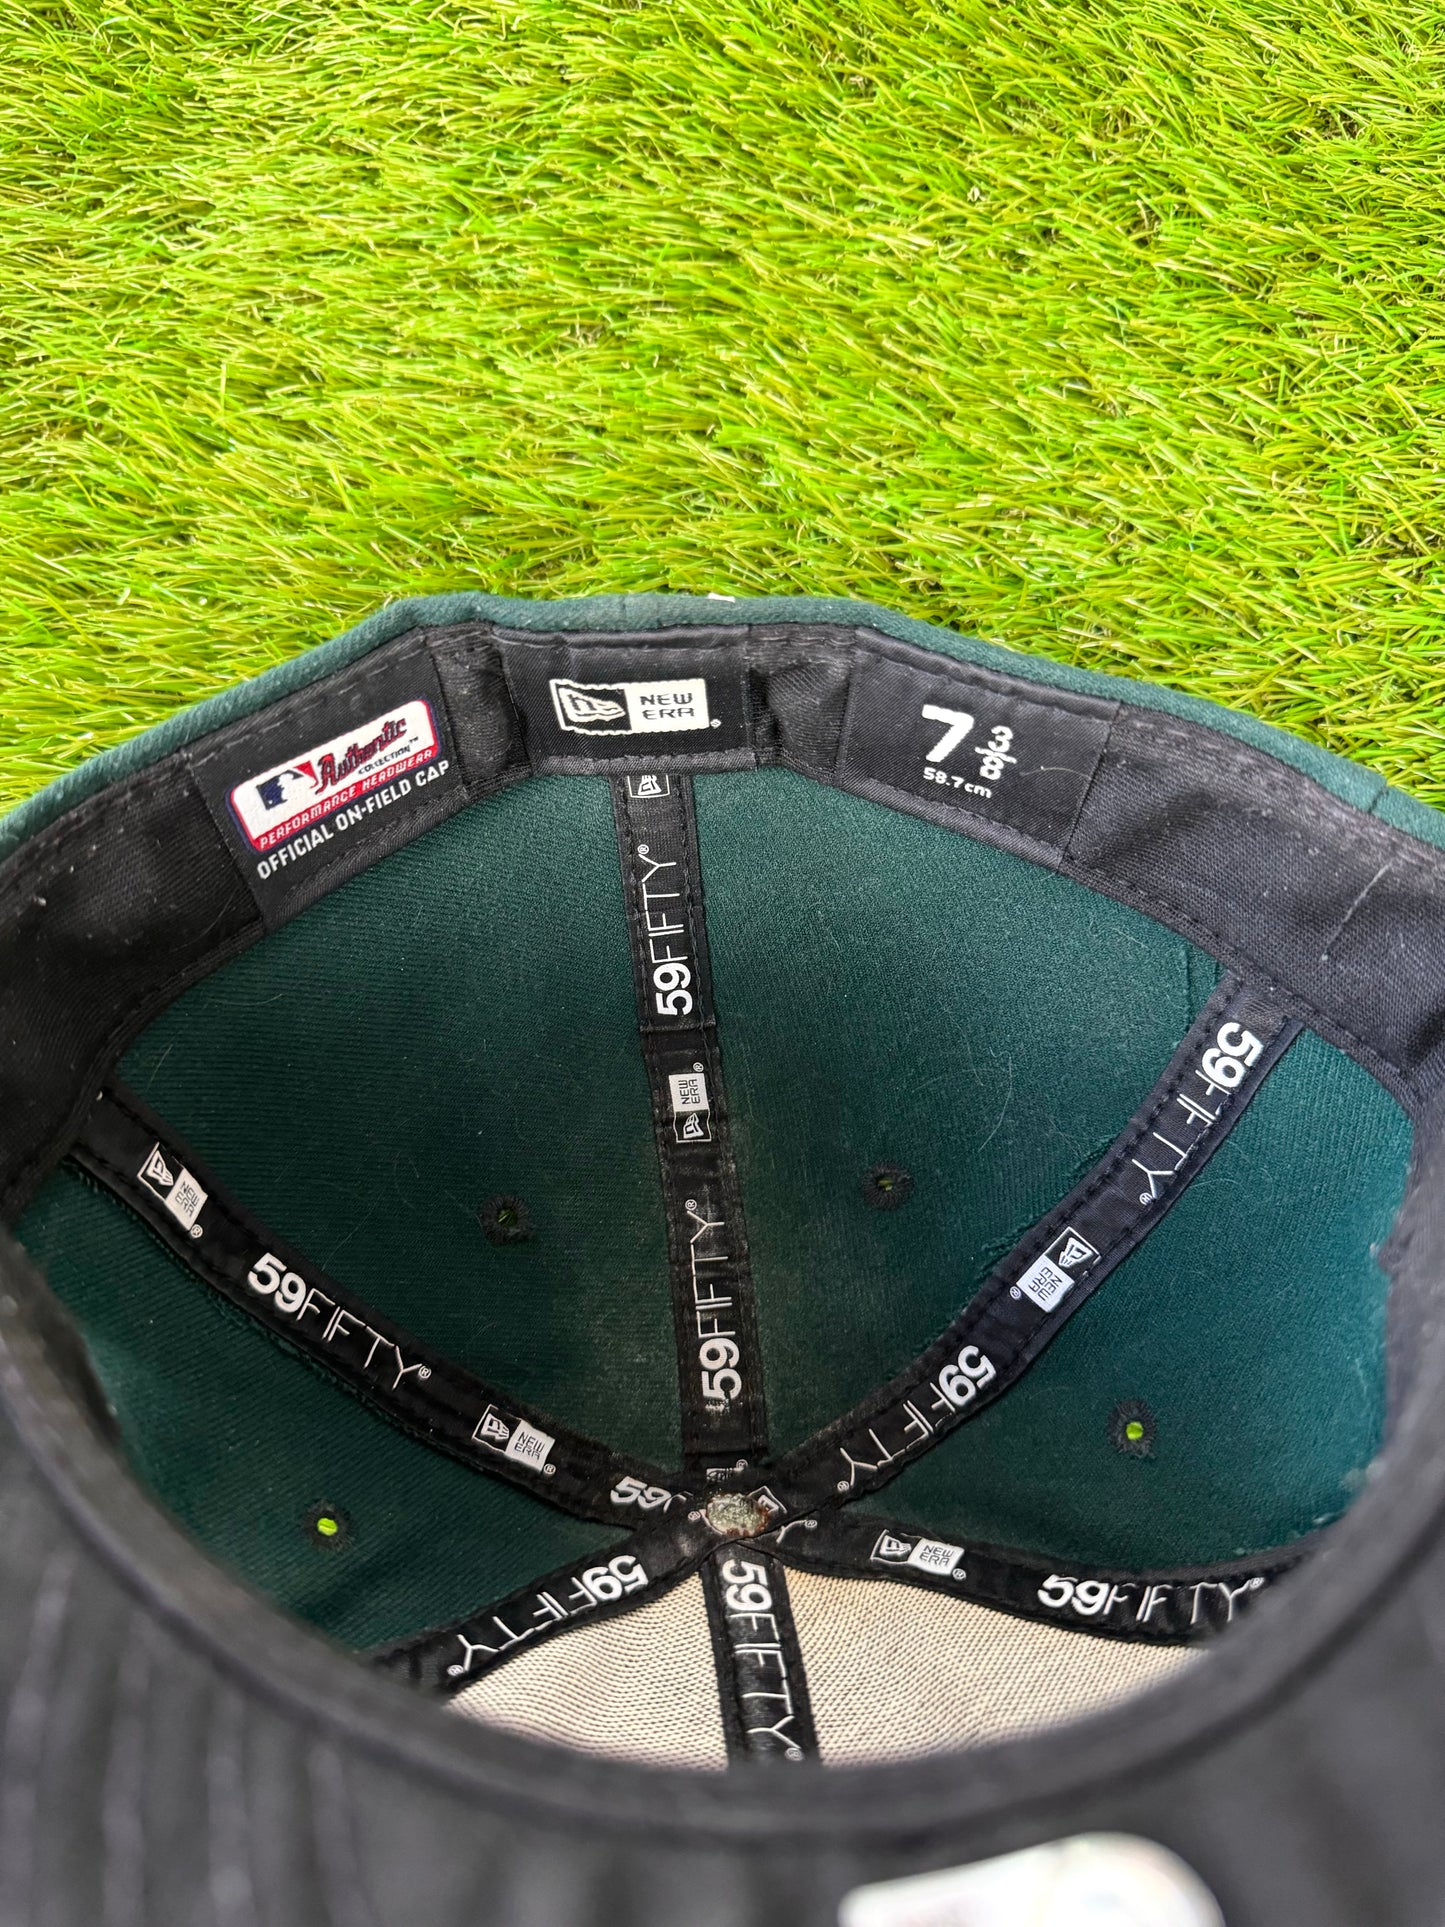 Oakland Athletics 2019 Brett Anderson Game Worn MLB Baseball Hat (7 3/8)